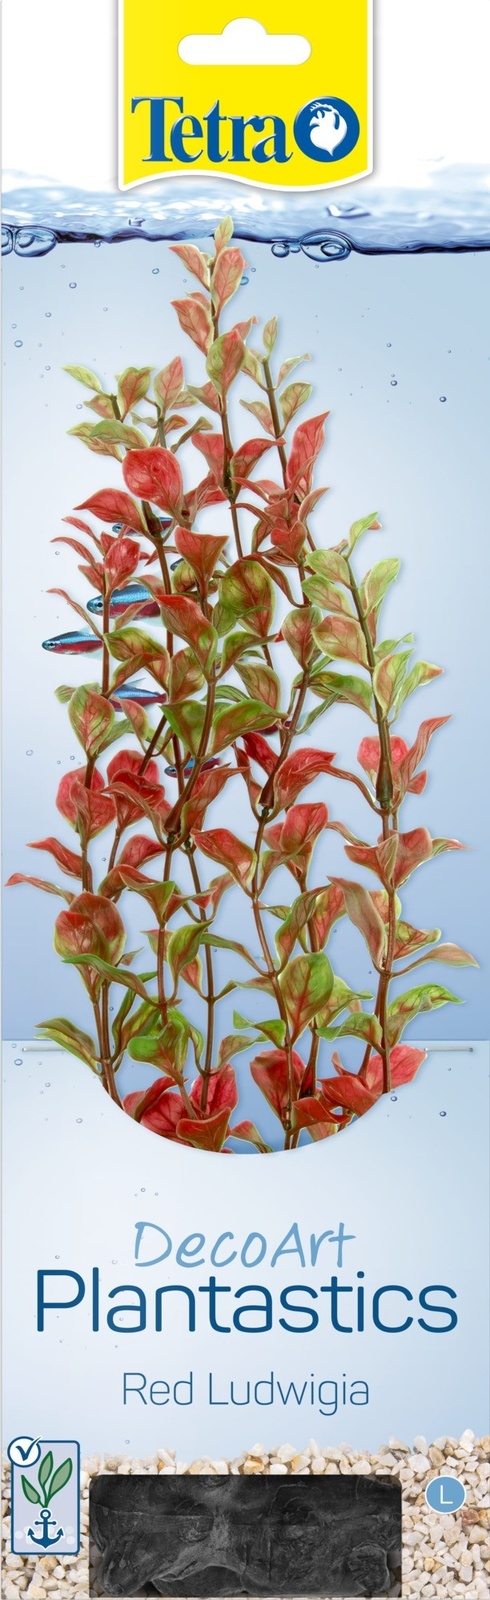 Tetra (оборудование) растение DecoArt Plantastics Red Ludvigia 30 см (115 г)